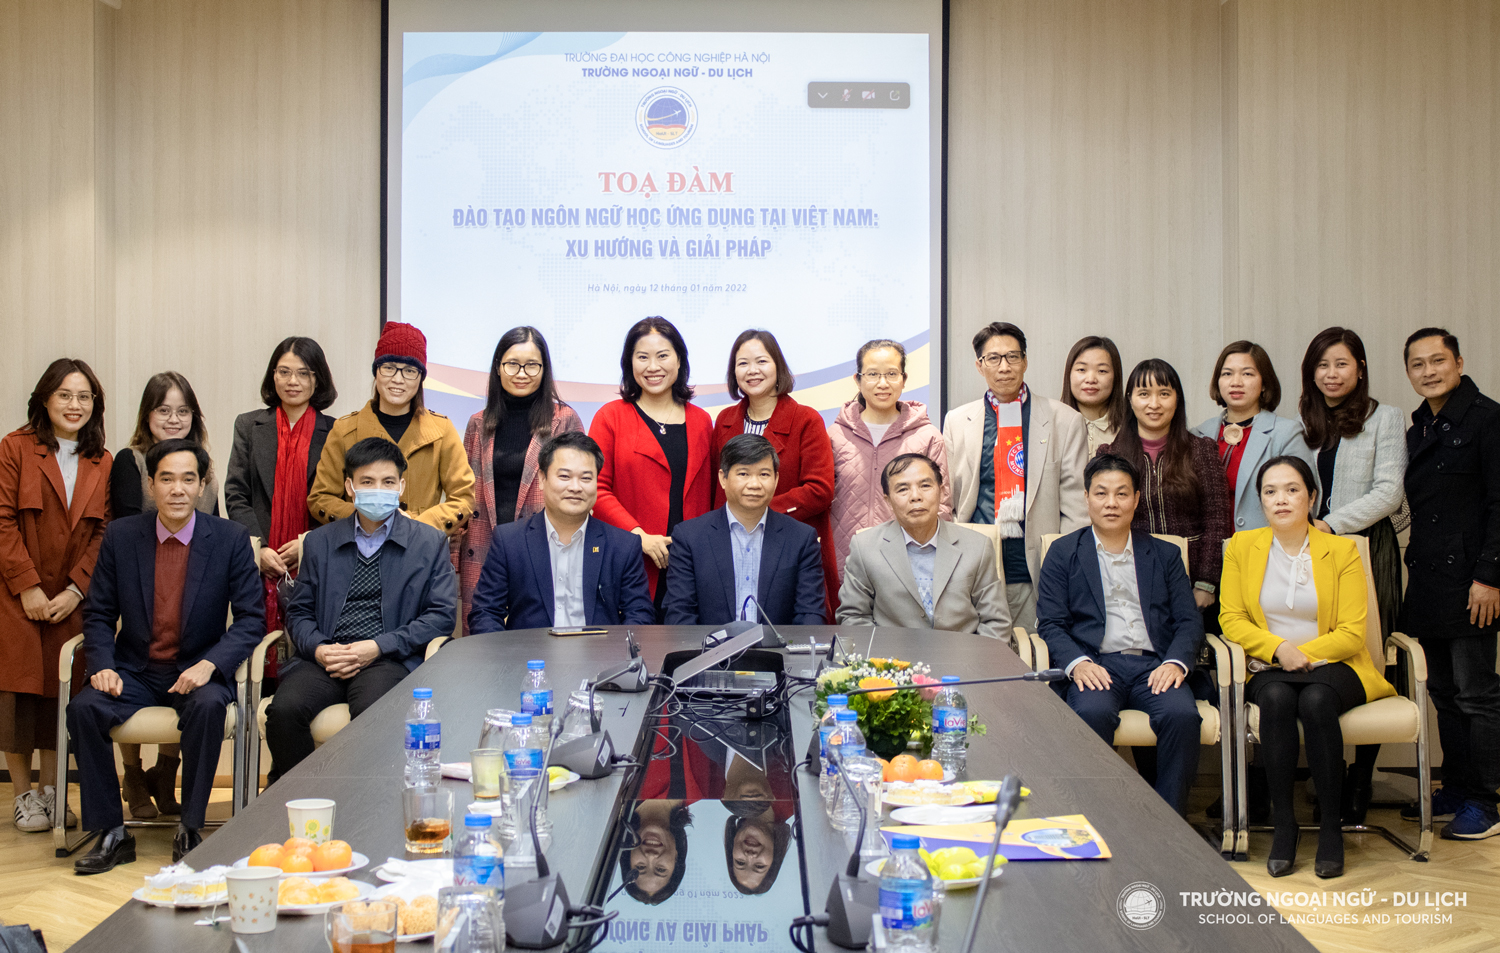 Tọa đàm Đào tạo Ngôn ngữ học ứng dụng tại Việt Nam: Xu hướng và giải pháp